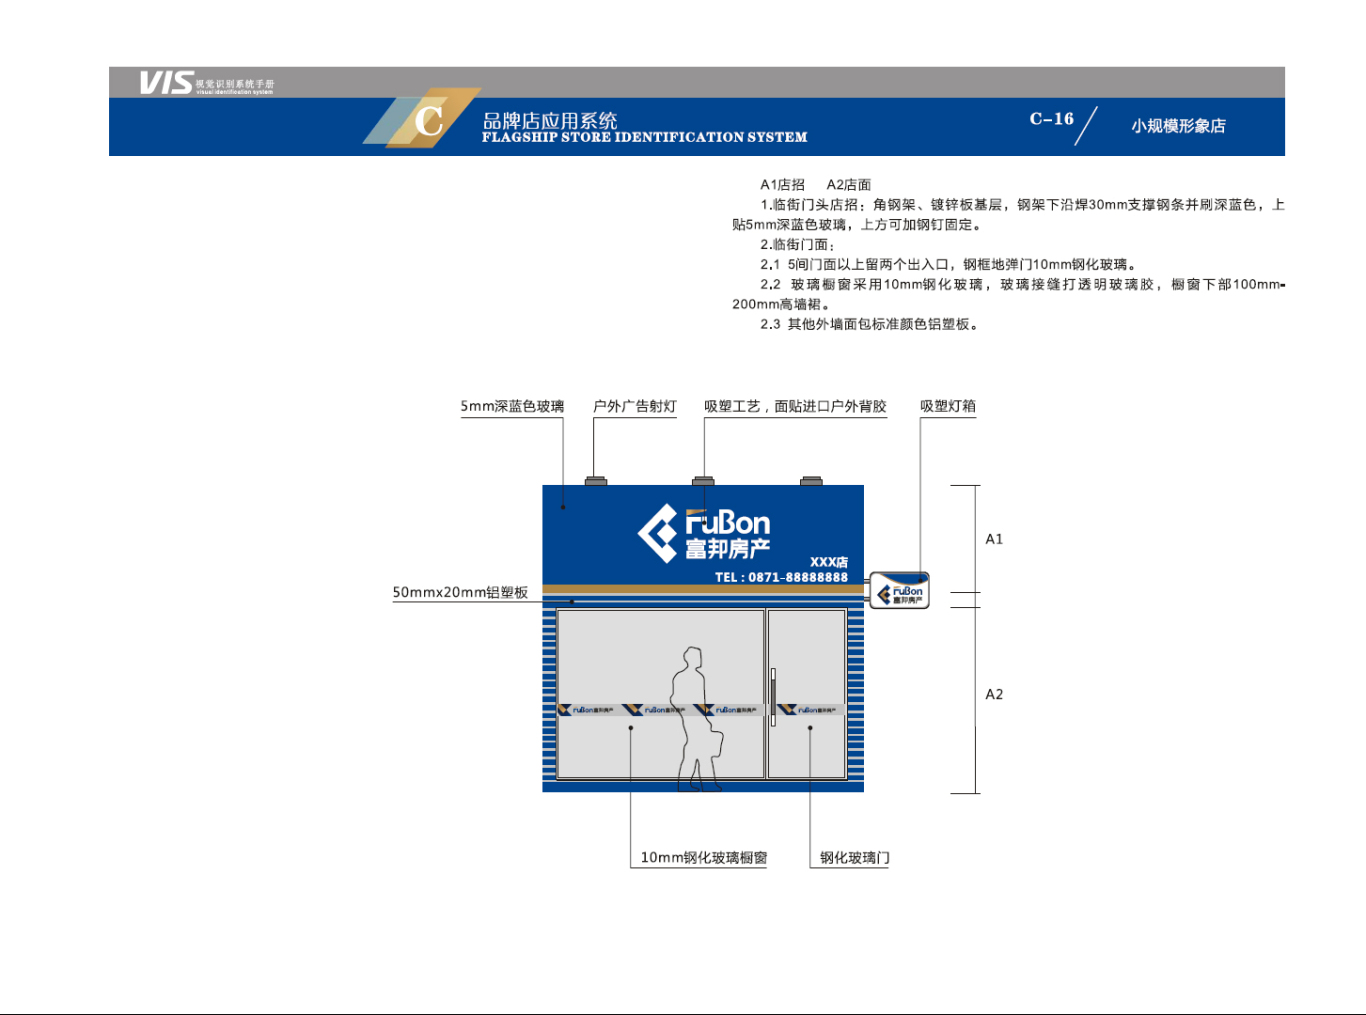 云南富邦房地产经纪公司-VIS视觉识别系统图25